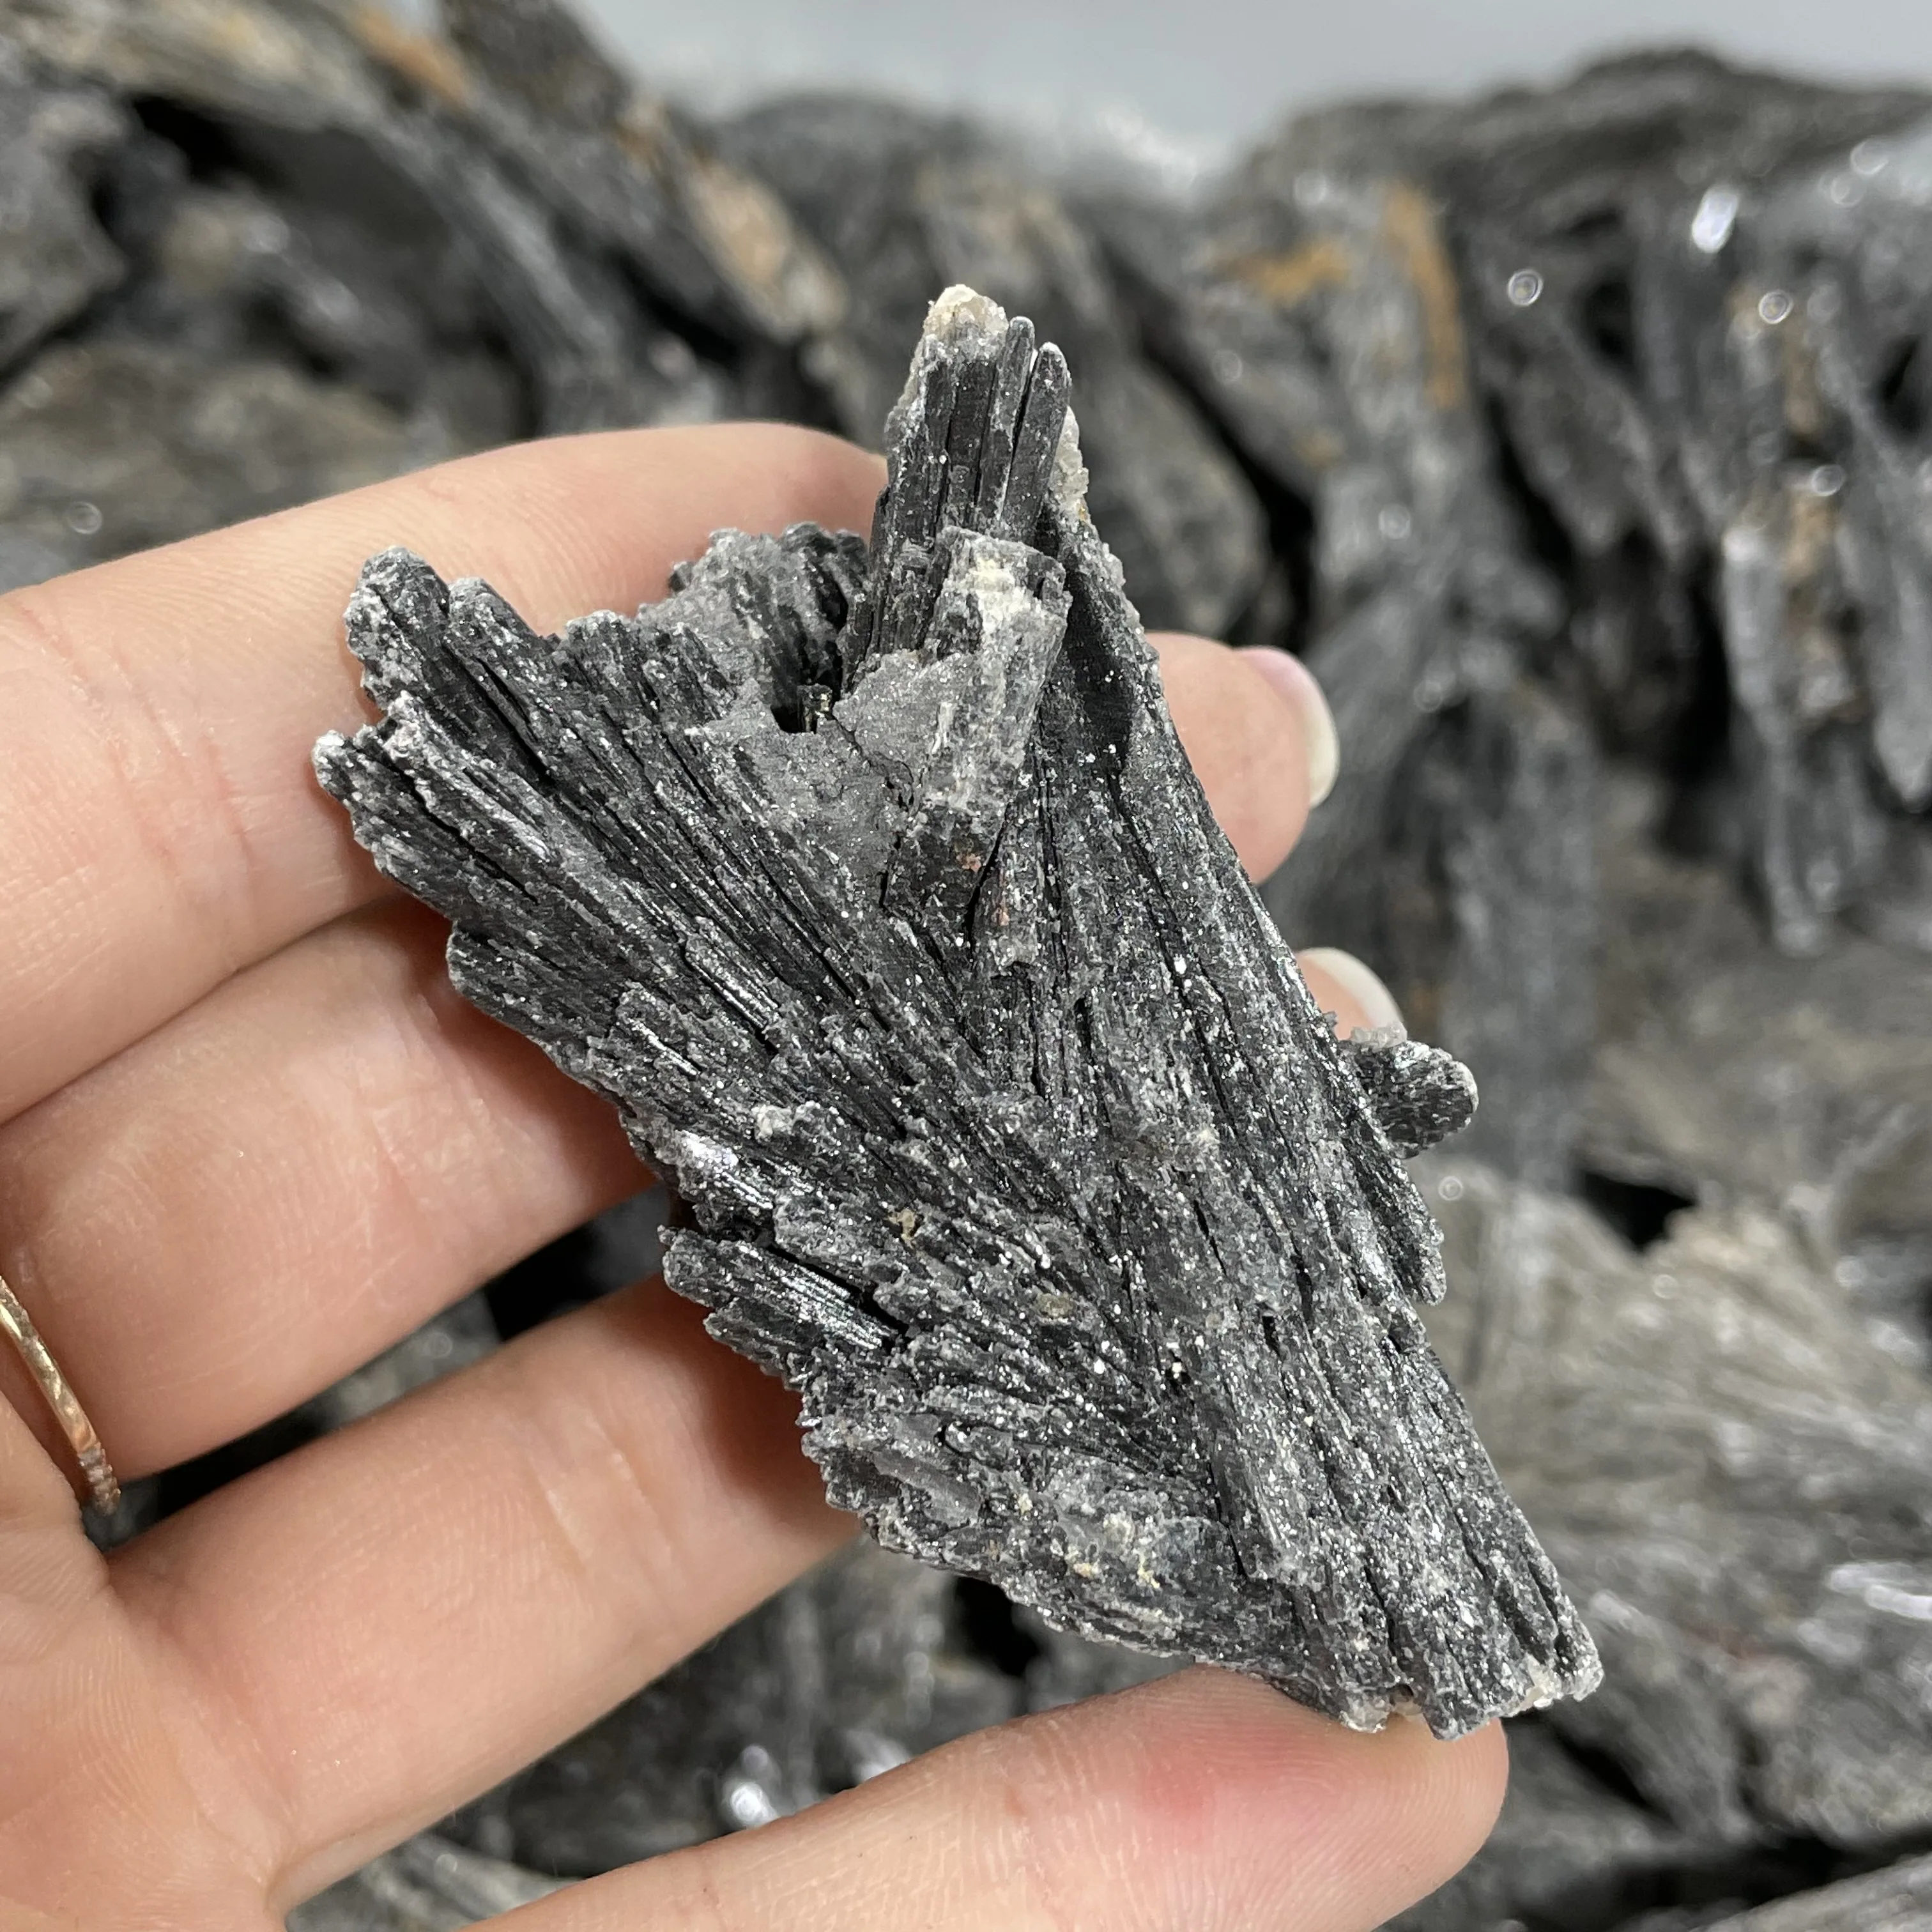 

Натуральный кристалл кварца угольно-черный из минерала турмалин с лечебным действием, образцы оригинальный руды